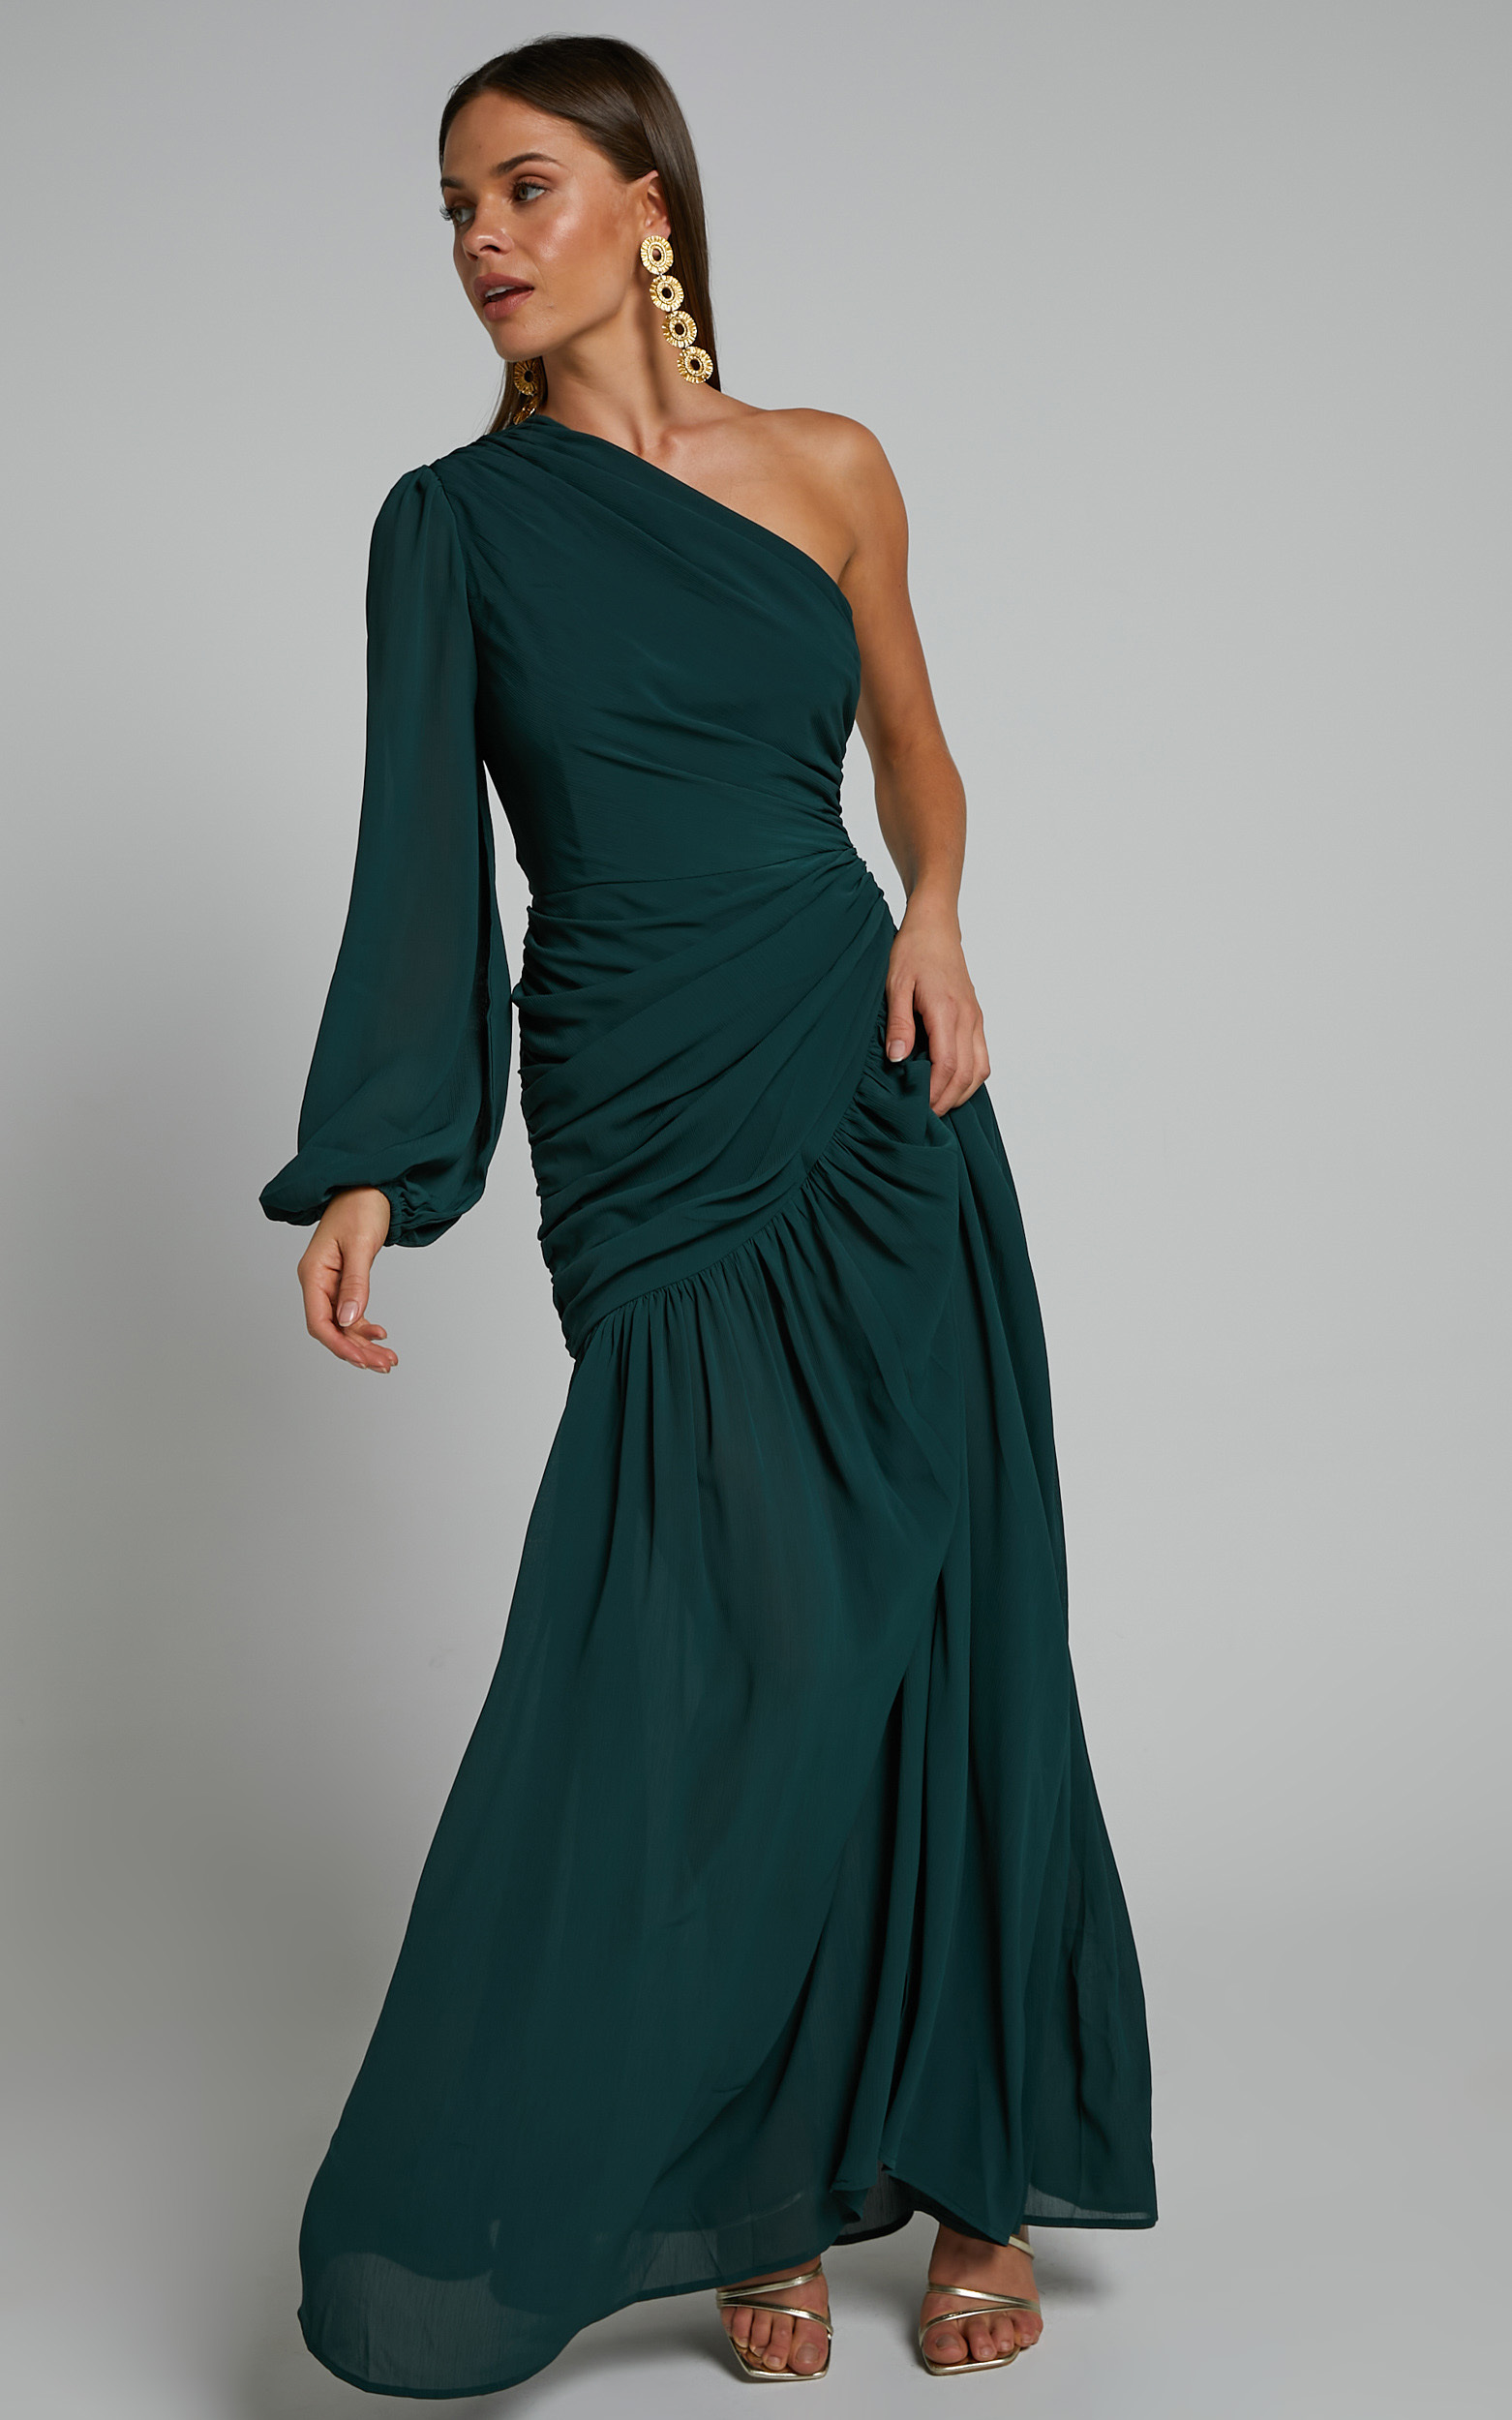 Grittah One Shoulder Bishop Sleeve High Slit Ruched Maxi Dress in Emerald - 04, GRN1, hi-res image number null